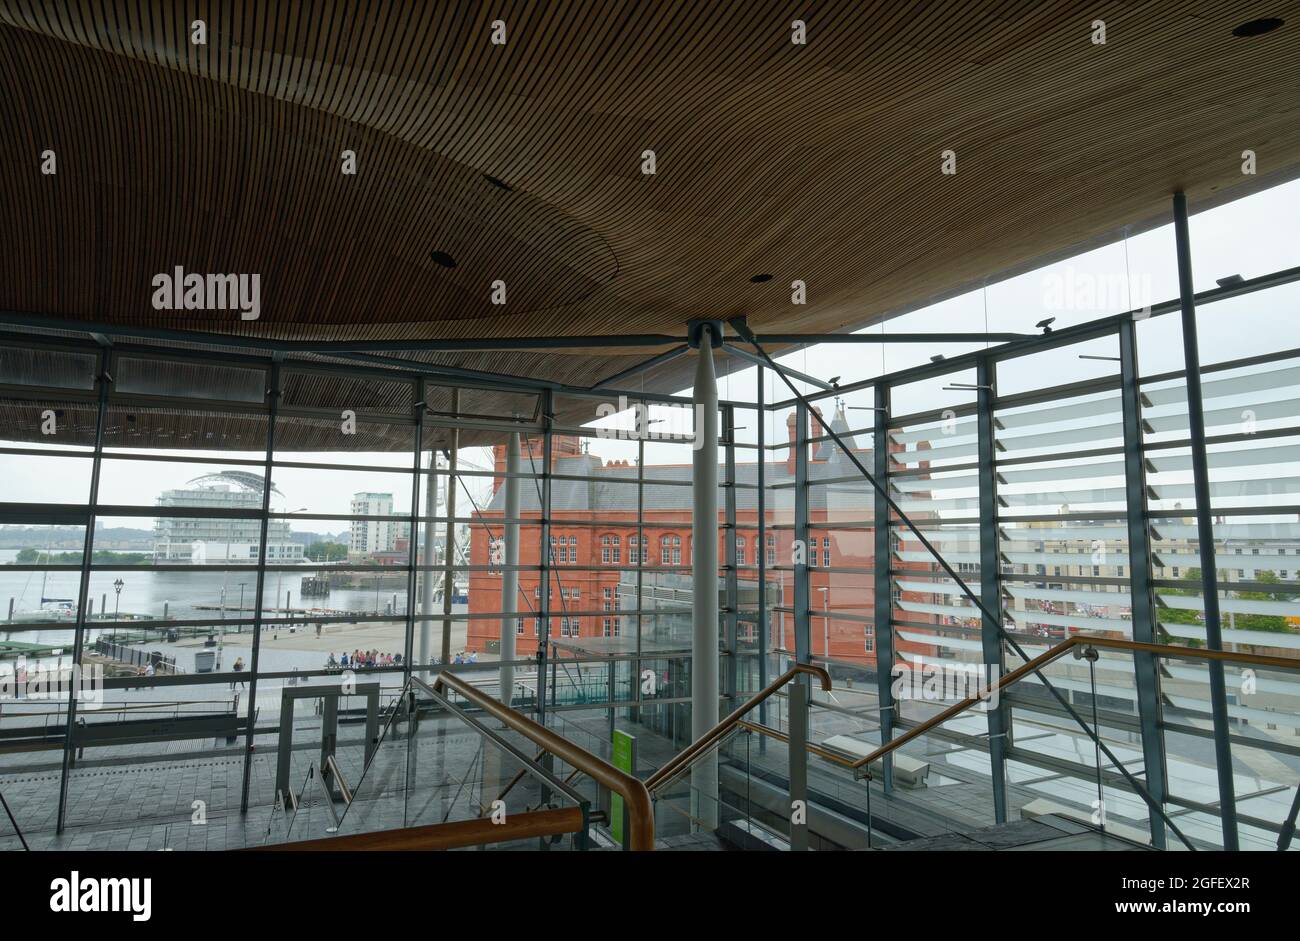 À l'intérieur du bâtiment du Parlement gallois, dans la baie de Cardiff, au pays de Galles. Plafond/toit ondulé de type champignon en bois de cèdre. Richard Rogers a conçu le bâtiment. Banque D'Images